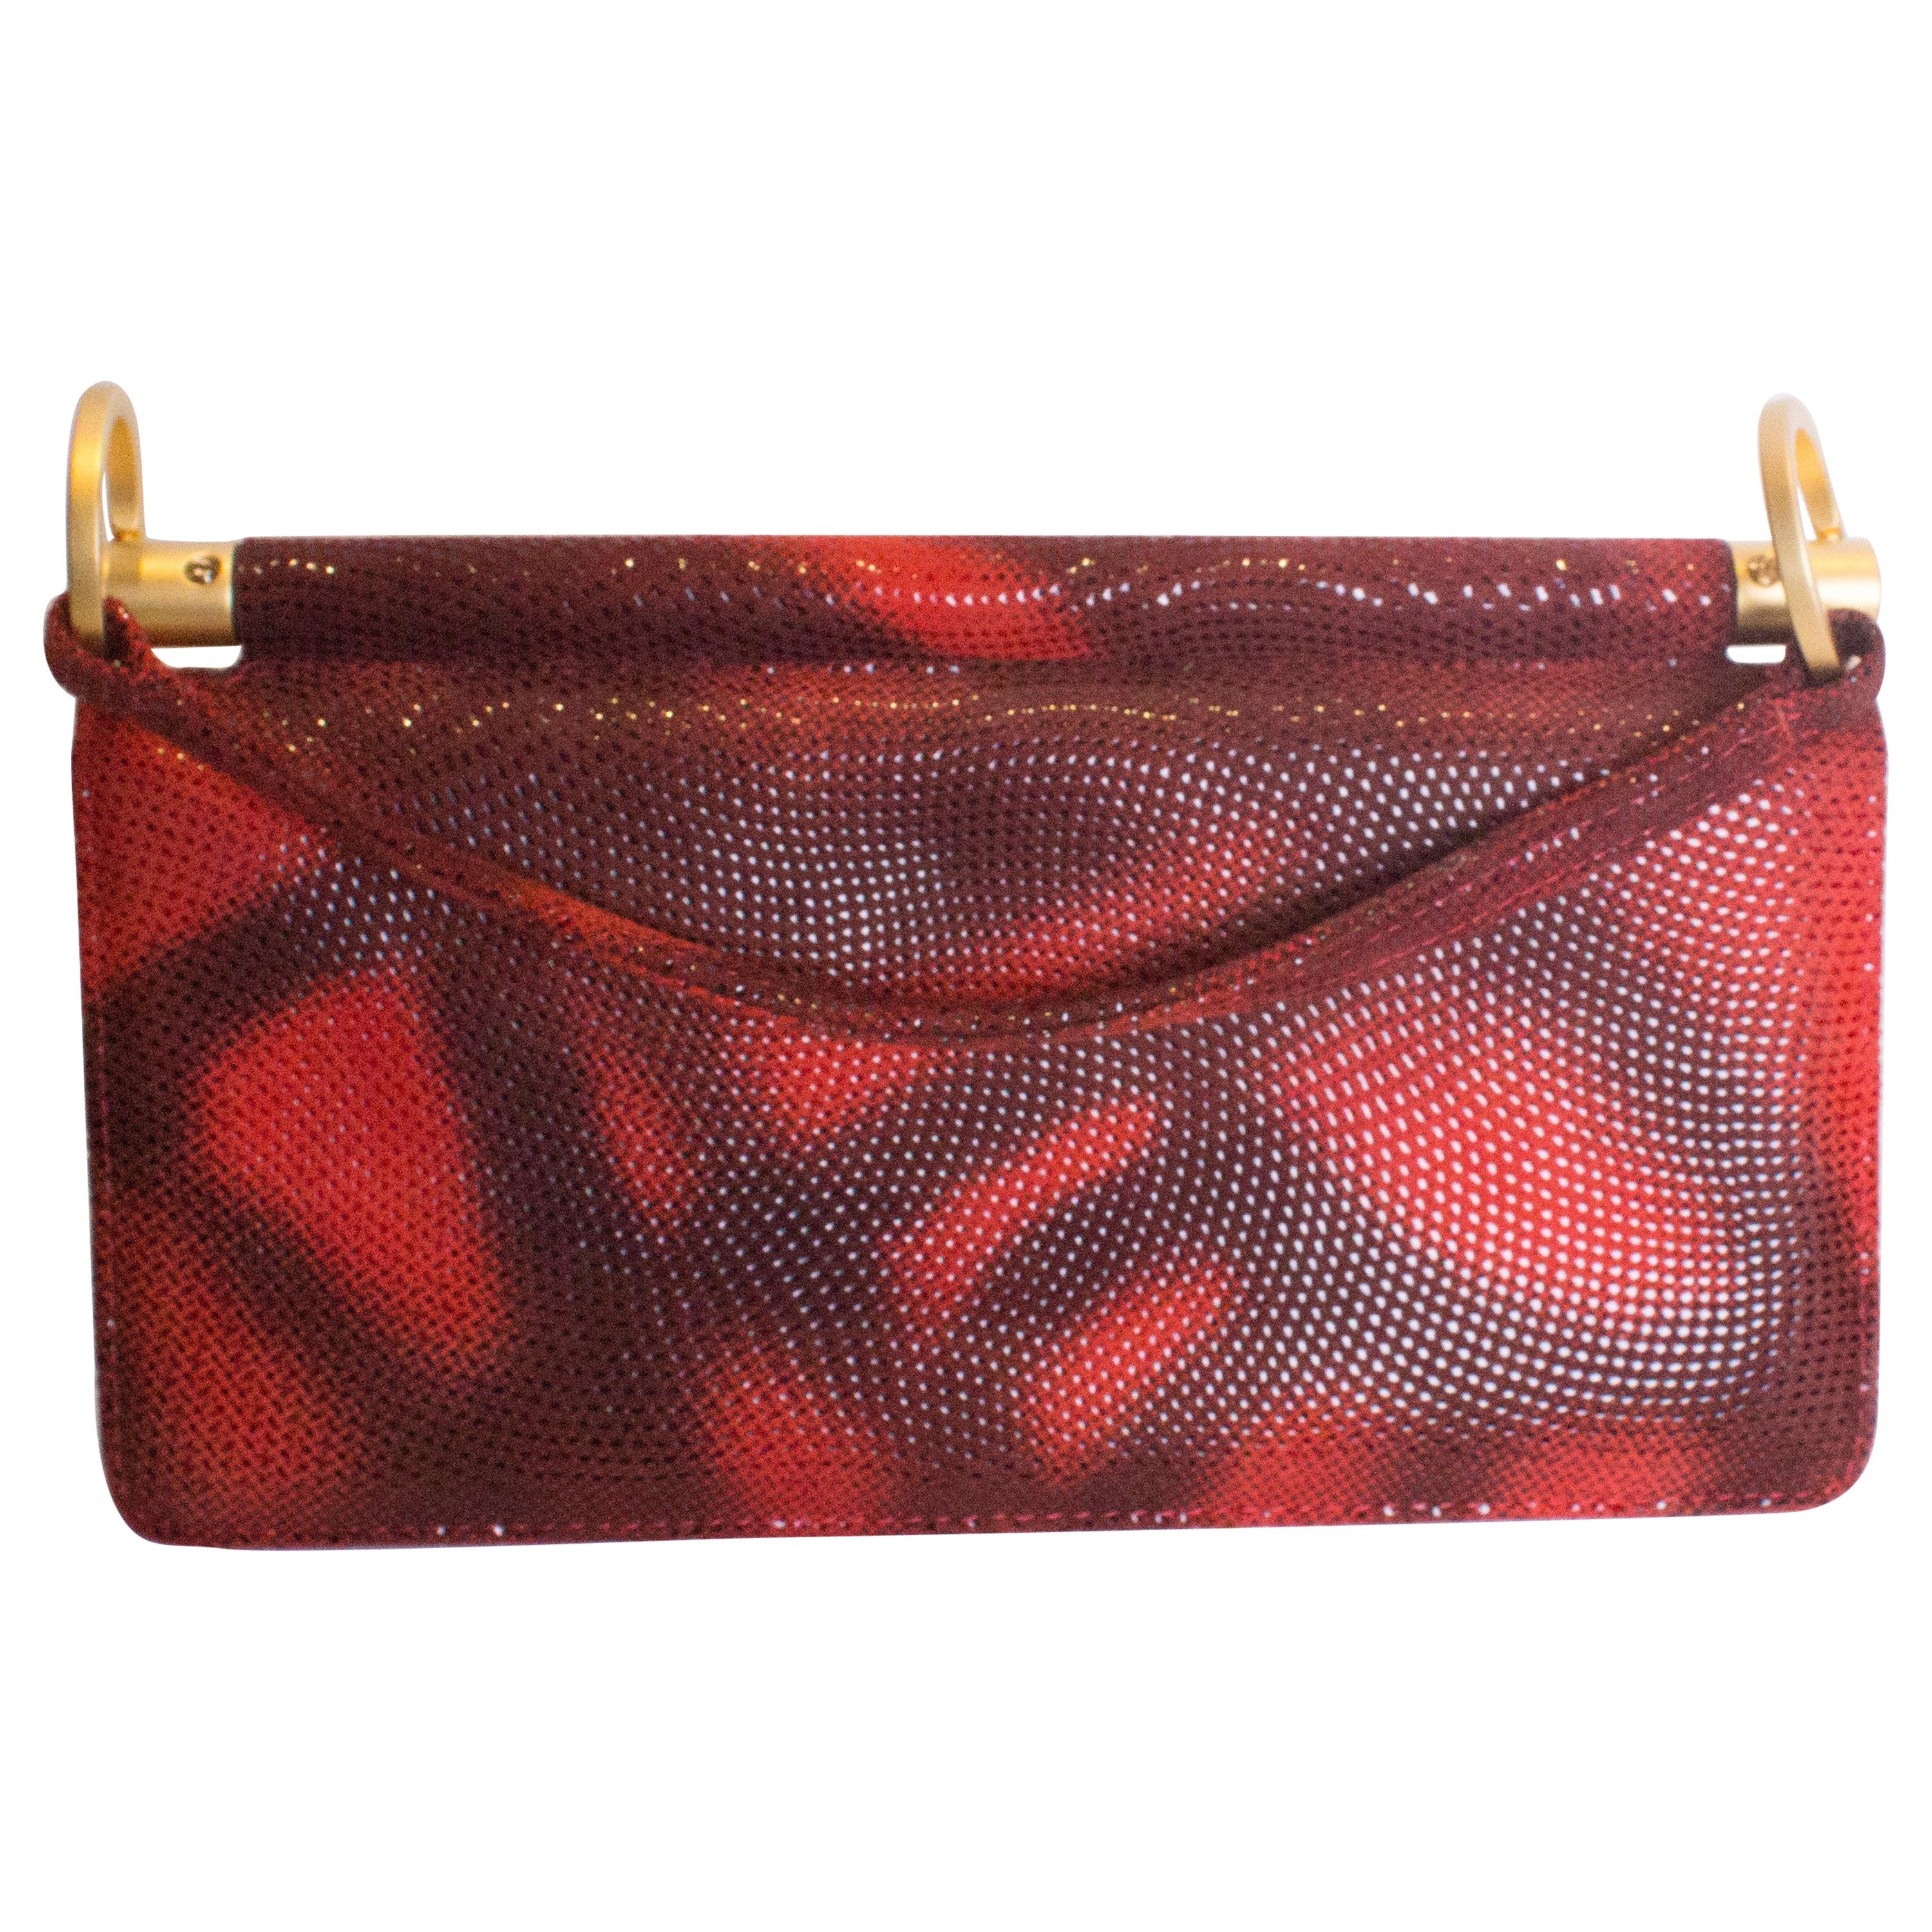 Vintage Charles Jourdan Red Handbag